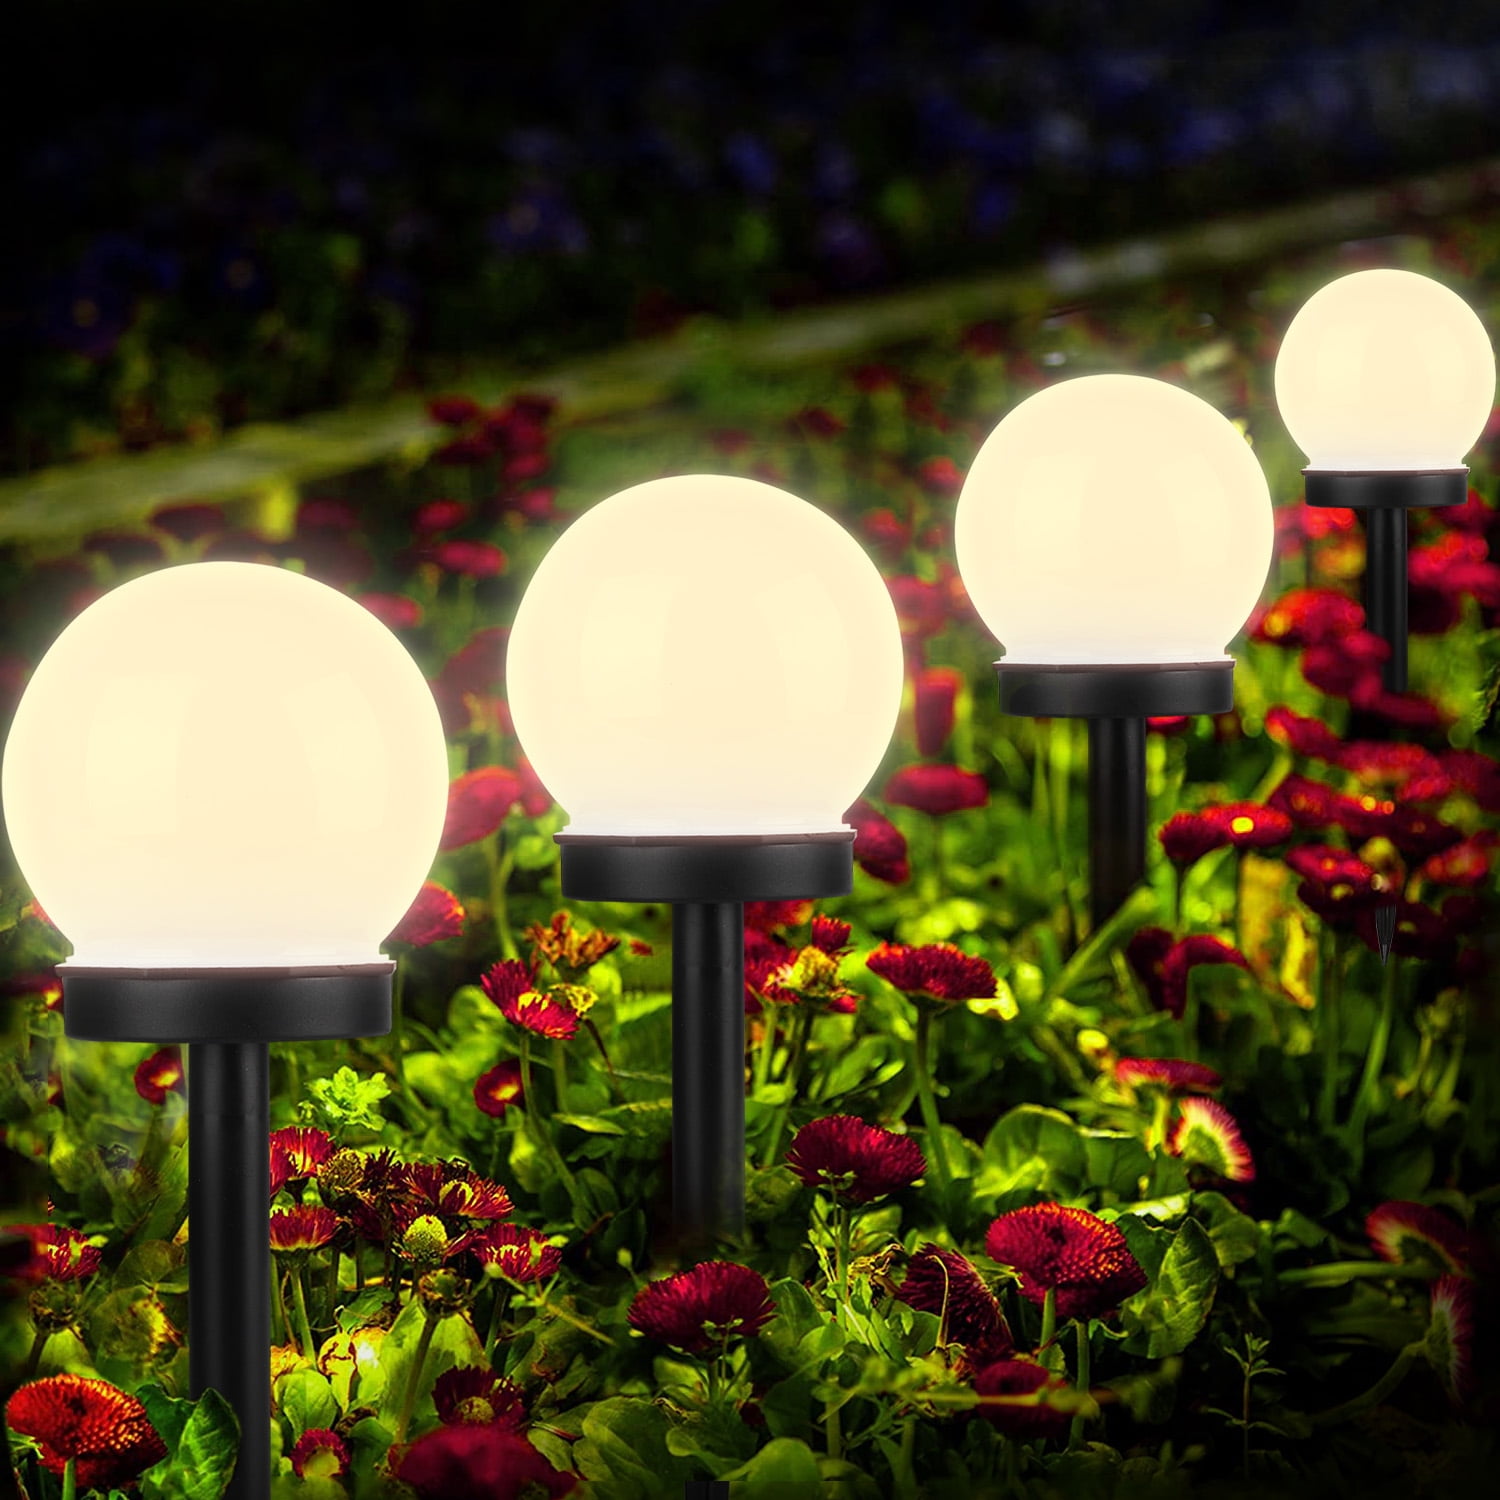 2X Solar Power Spot Light Outdoor Garden Lawn Landscape Waterproof Path LED Lamp 